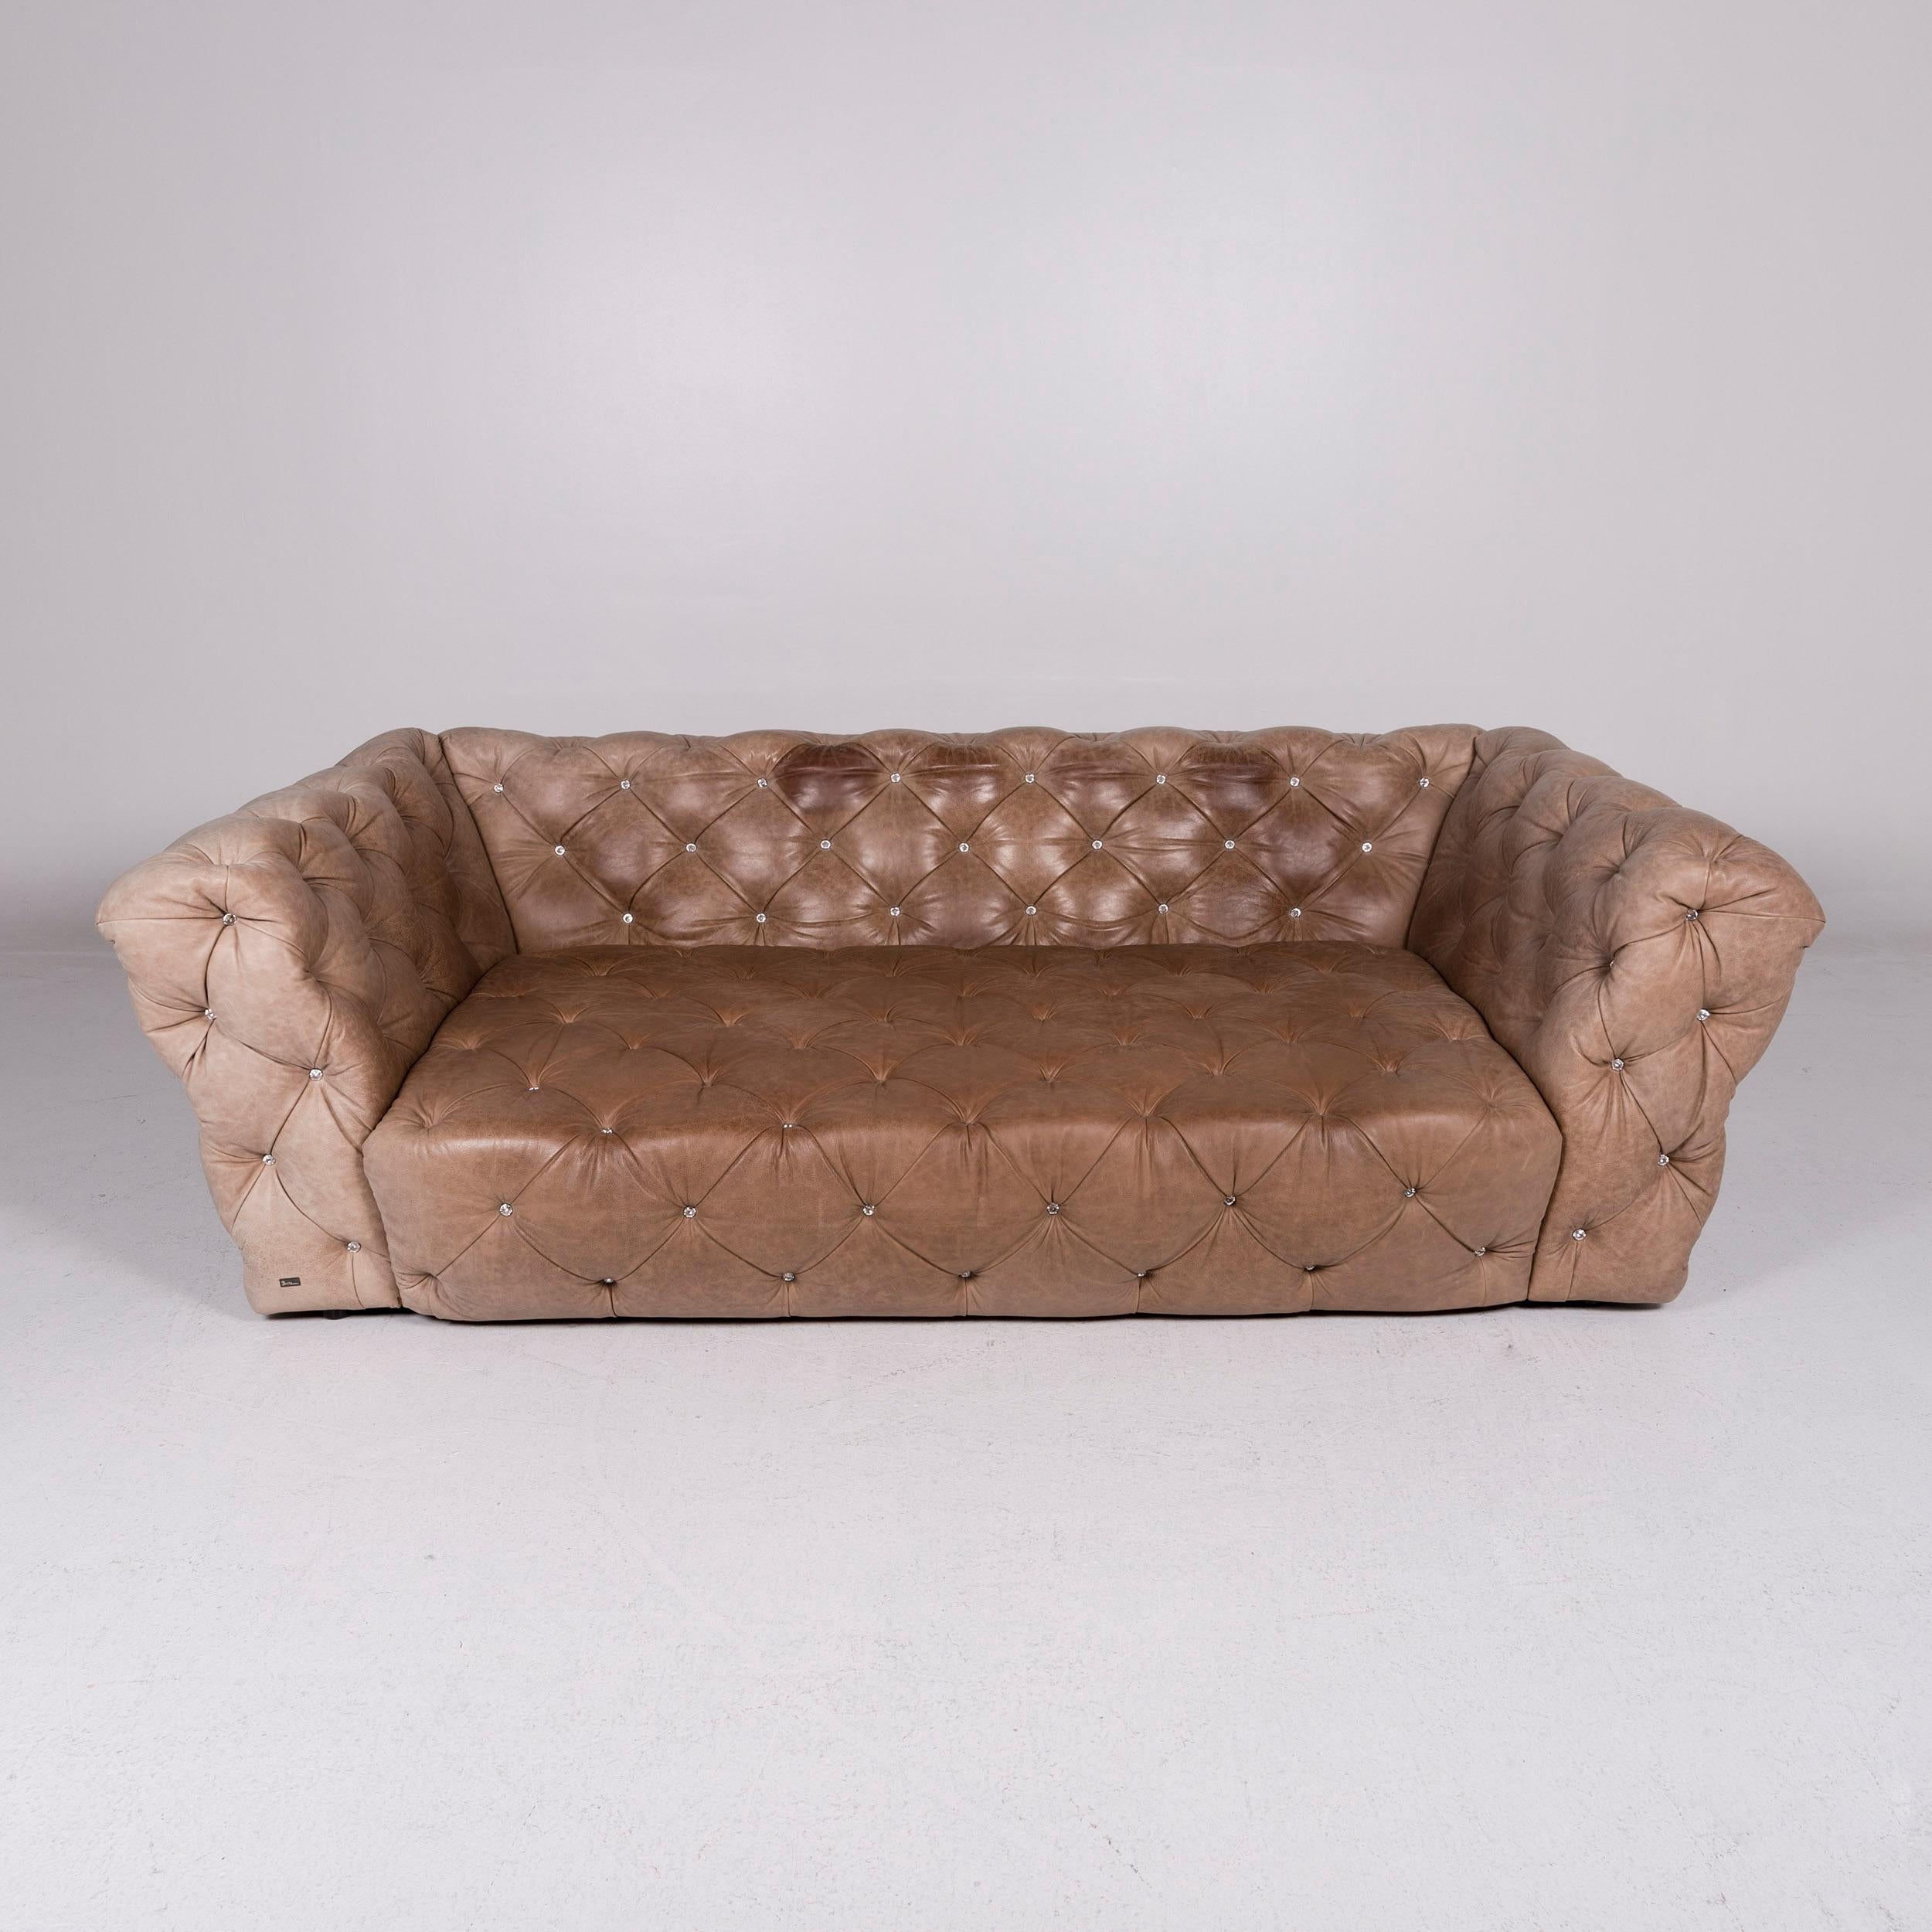 Bretz Marilyn Leather Sofa Brown Three-Seat Kaptionierung Glitterstones For Sale 2